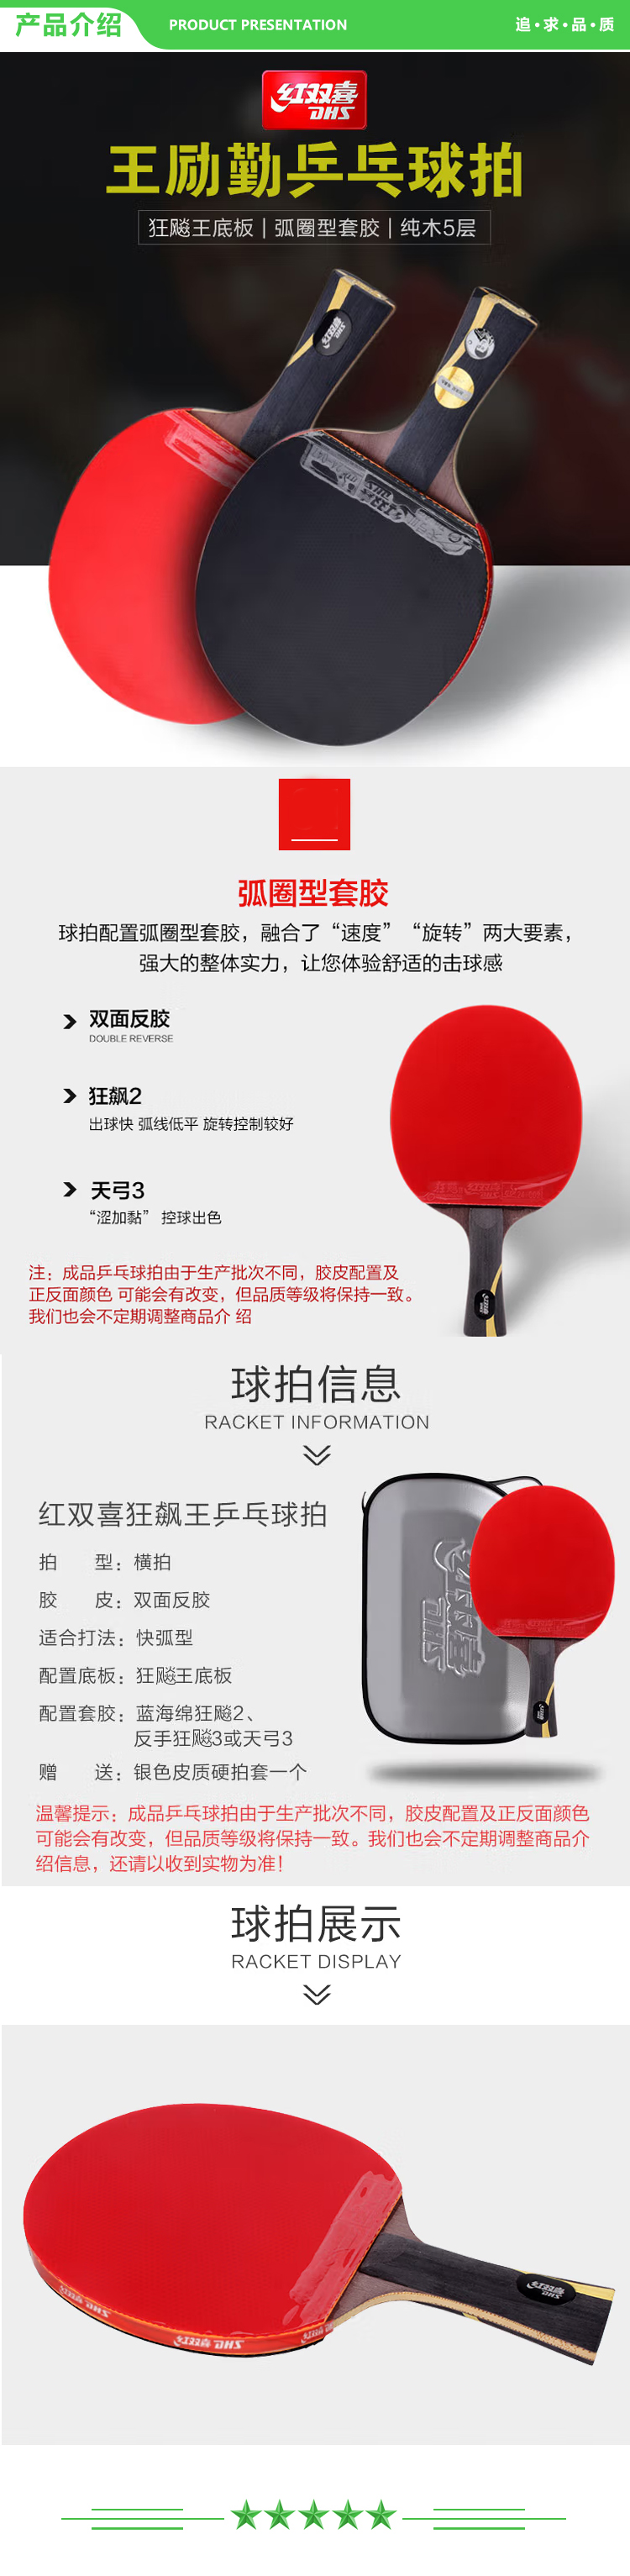 红双喜 DHS WANG-L 乒乓球拍 王励勤礼盒装 双面反胶皮 横拍 长柄 含拍套 .jpg